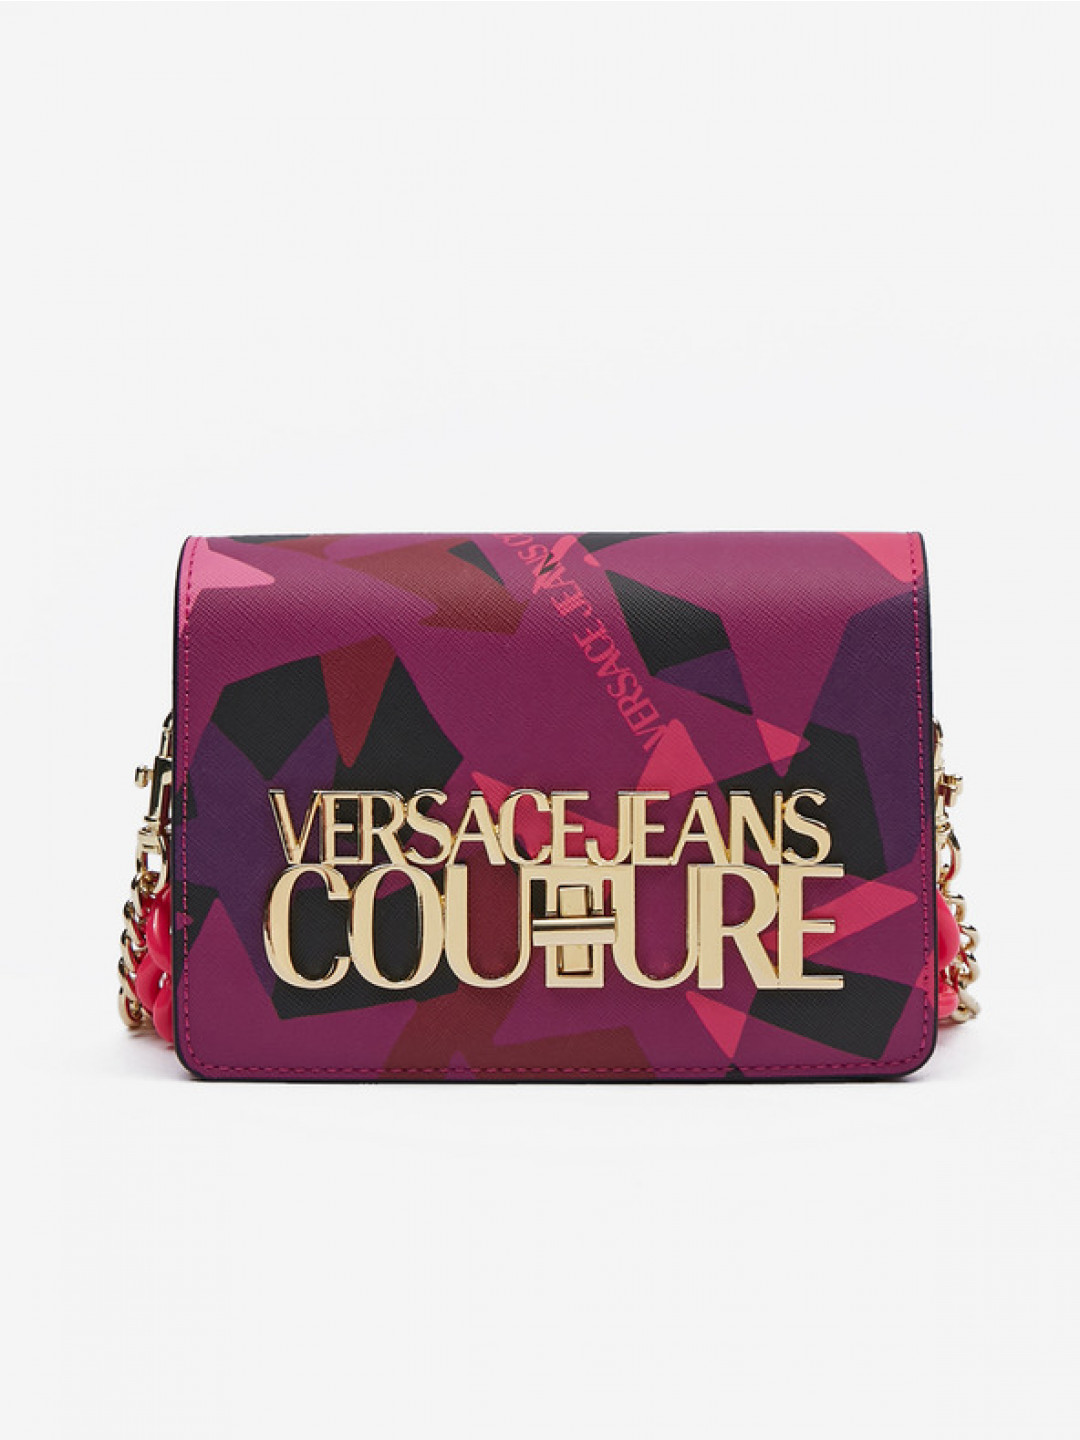 Versace Jeans Couture Kabelka Fialová